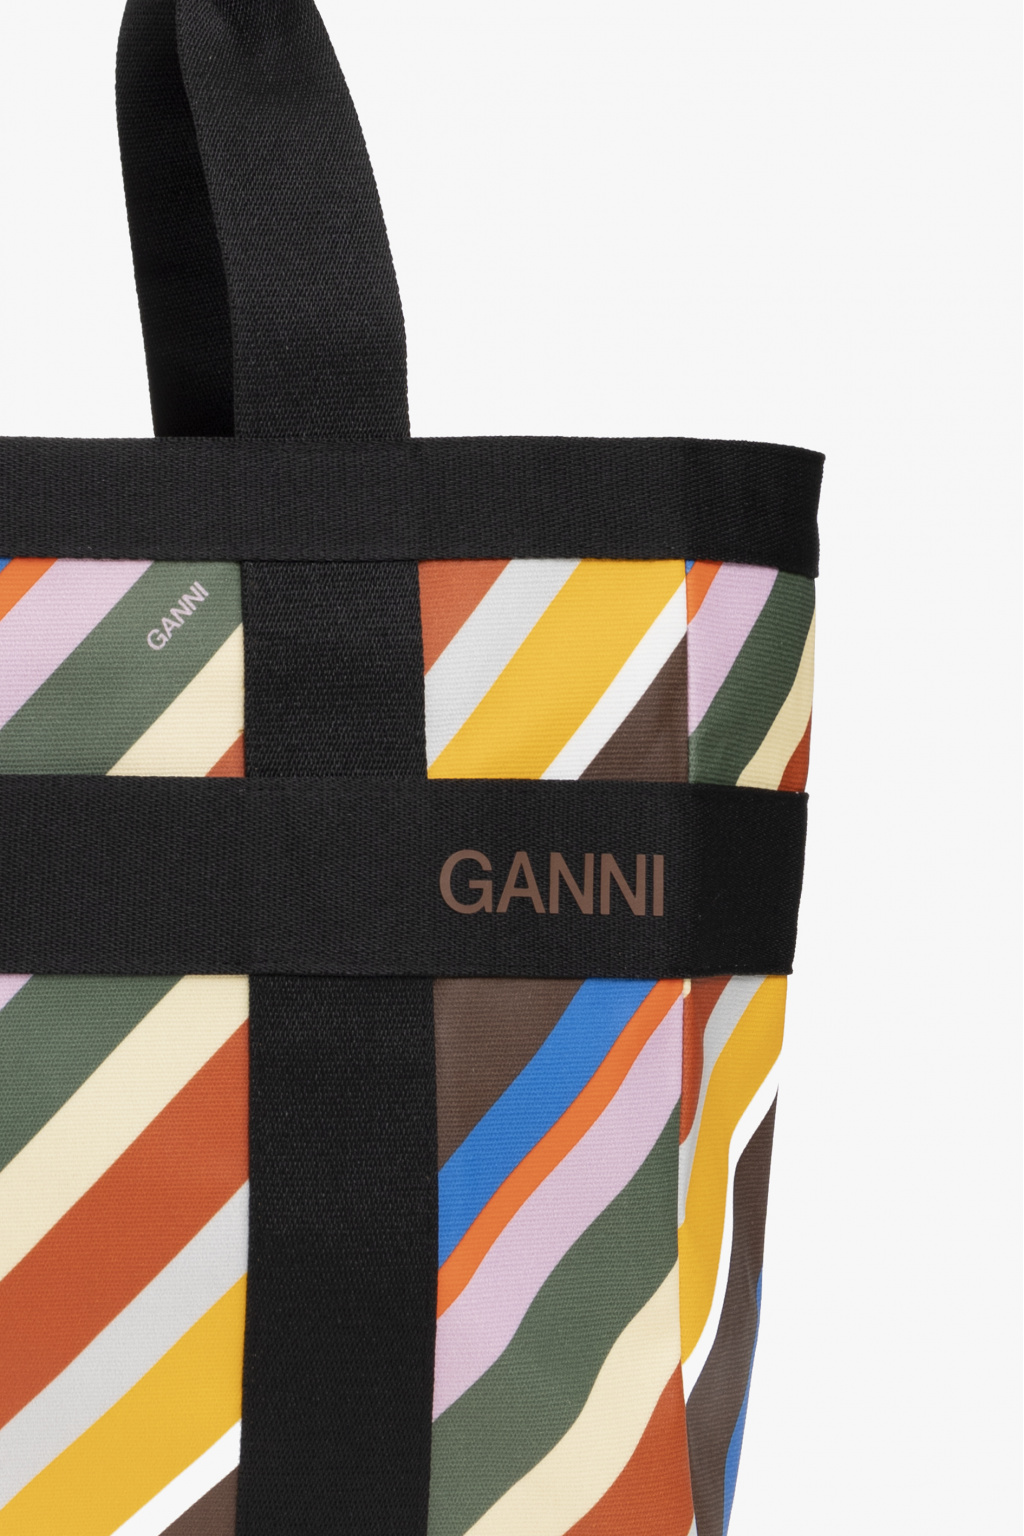 Ganni Patterned shopper backpack bag